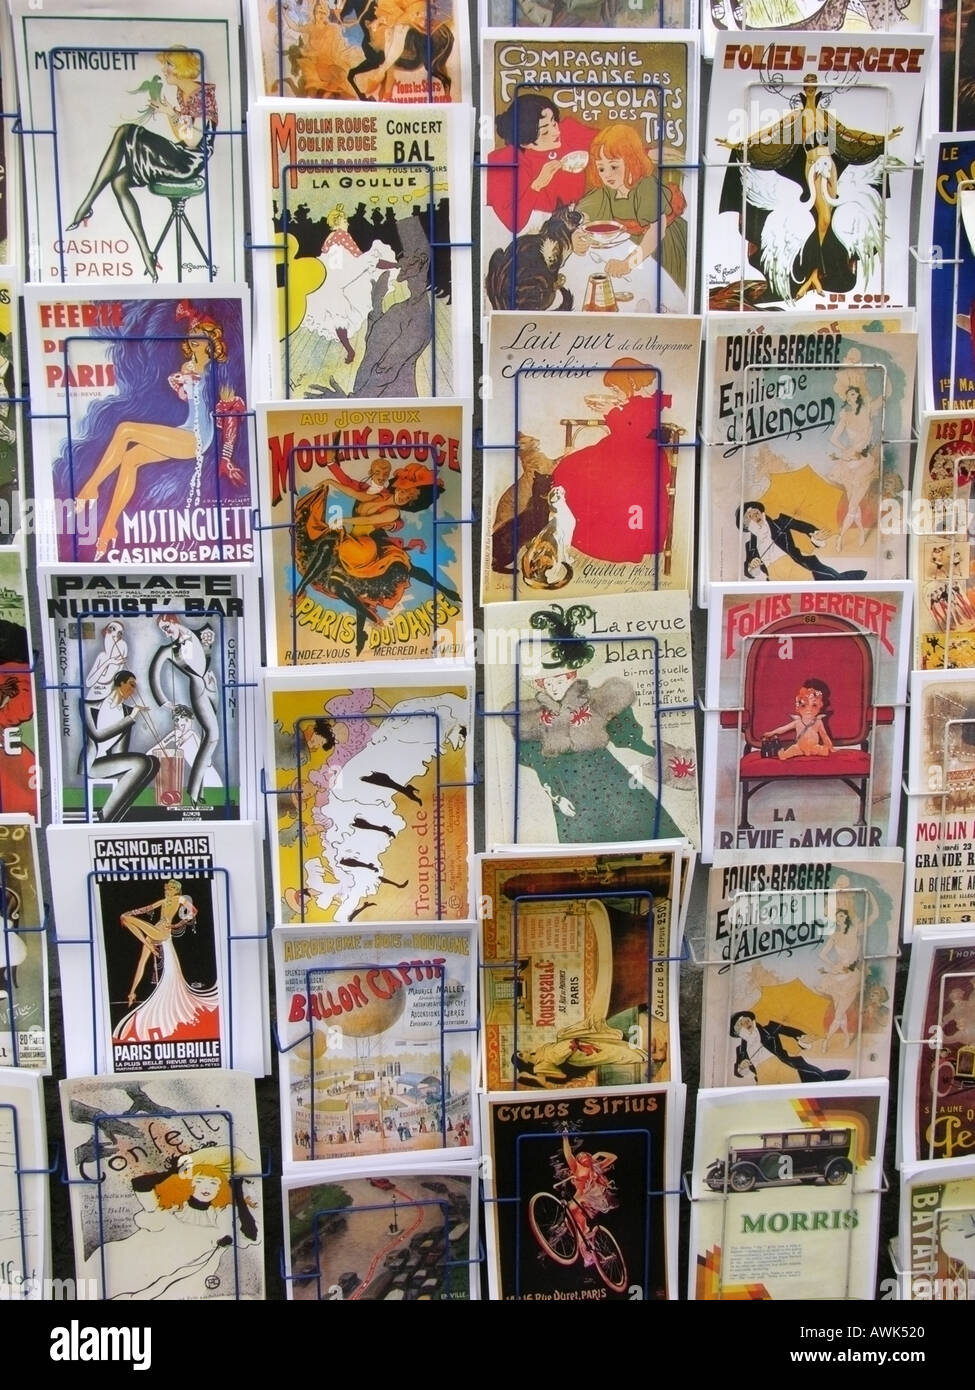 Visualizzazione delle cartoline che mostra poster popolari da Toulouse Lautrec e di altri artisti di montmartre parigi Foto Stock